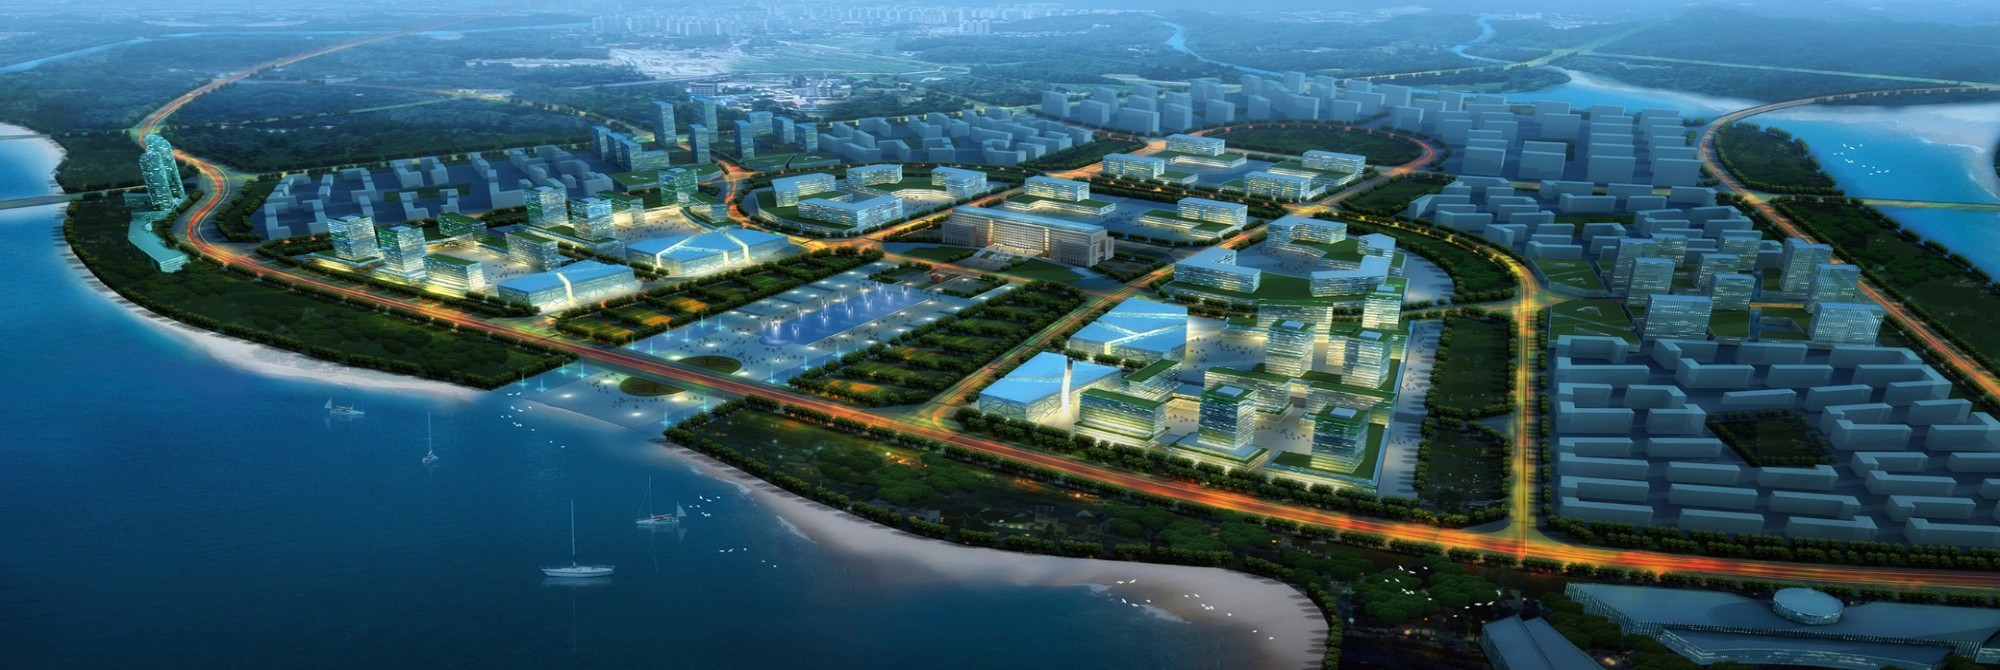 large smart city - Gesellschaft - planung